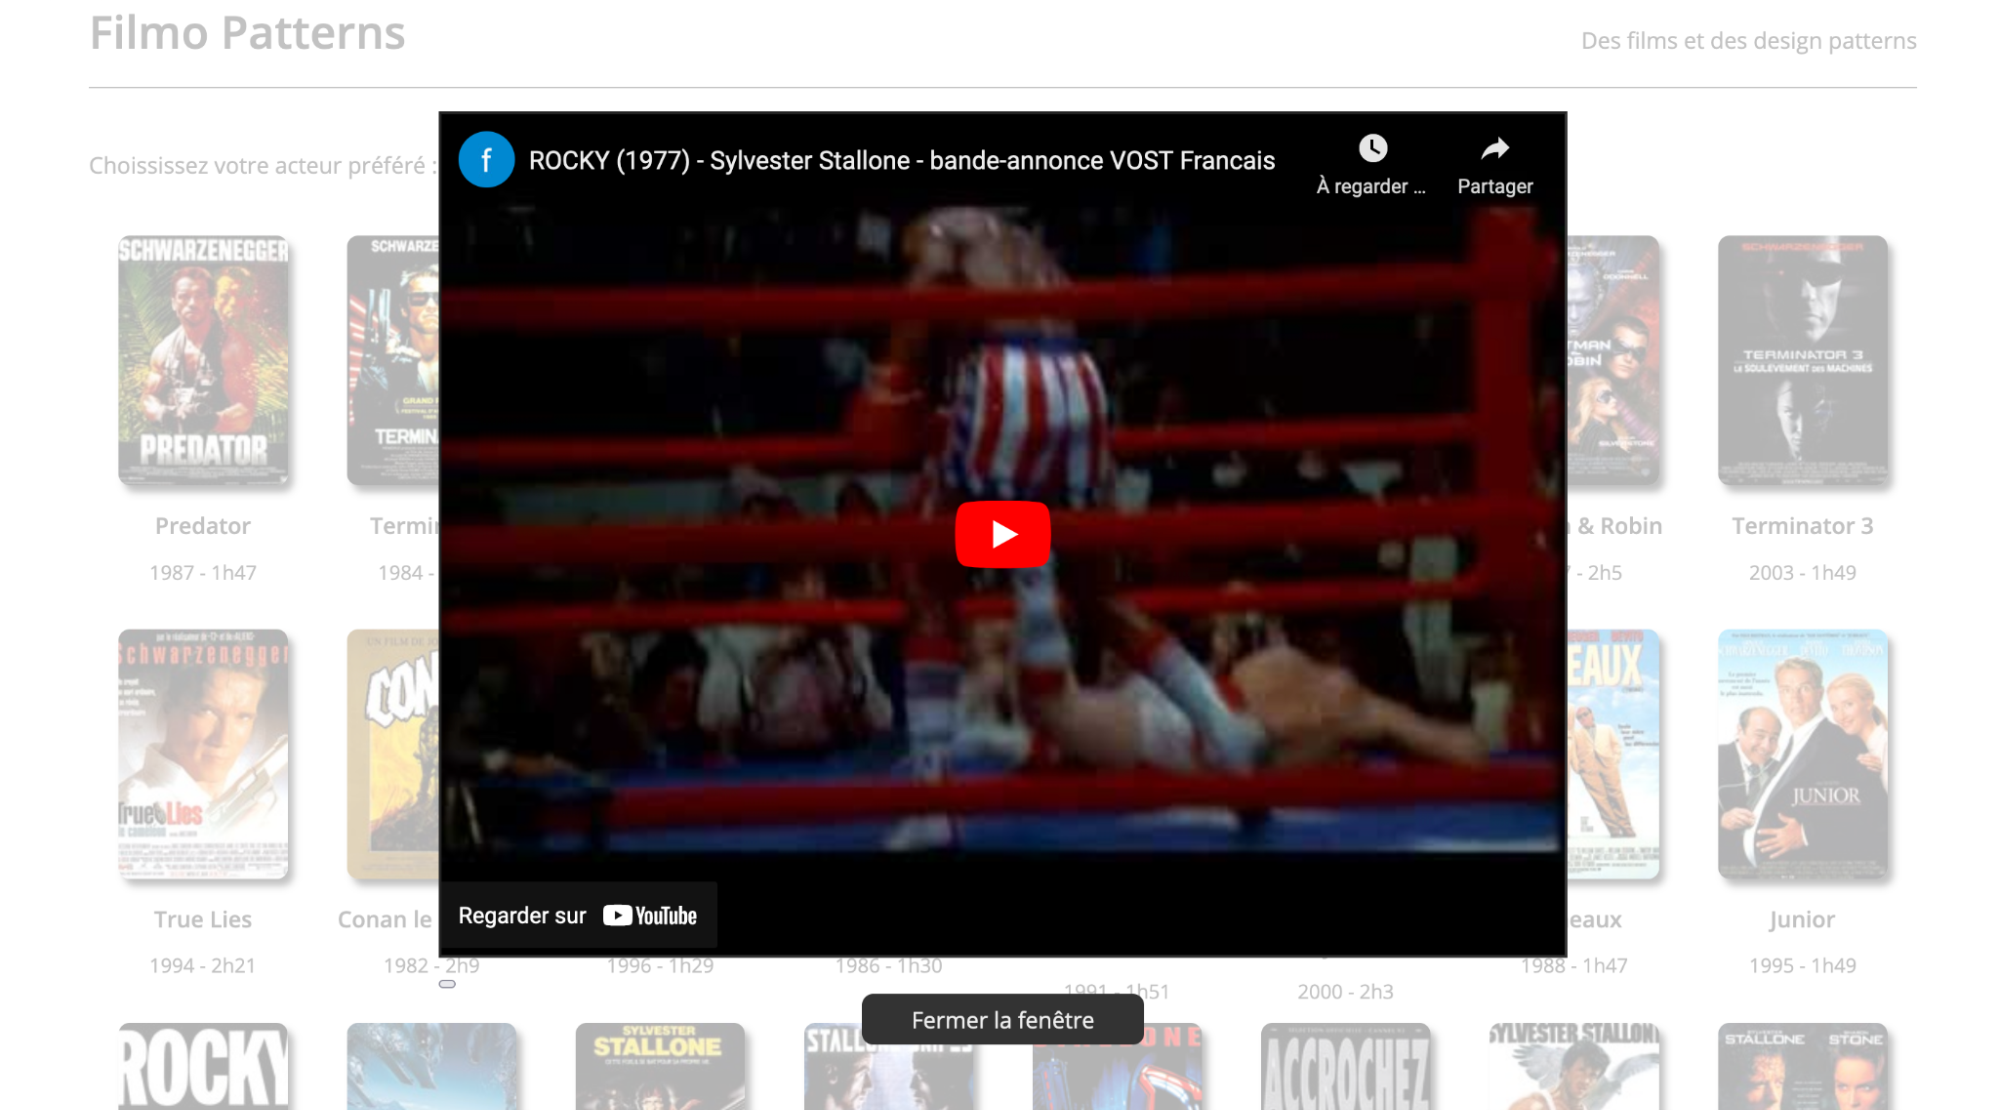 Screenshot de la page Filmo Patterns avec la vidéo teaser qui s'affiche